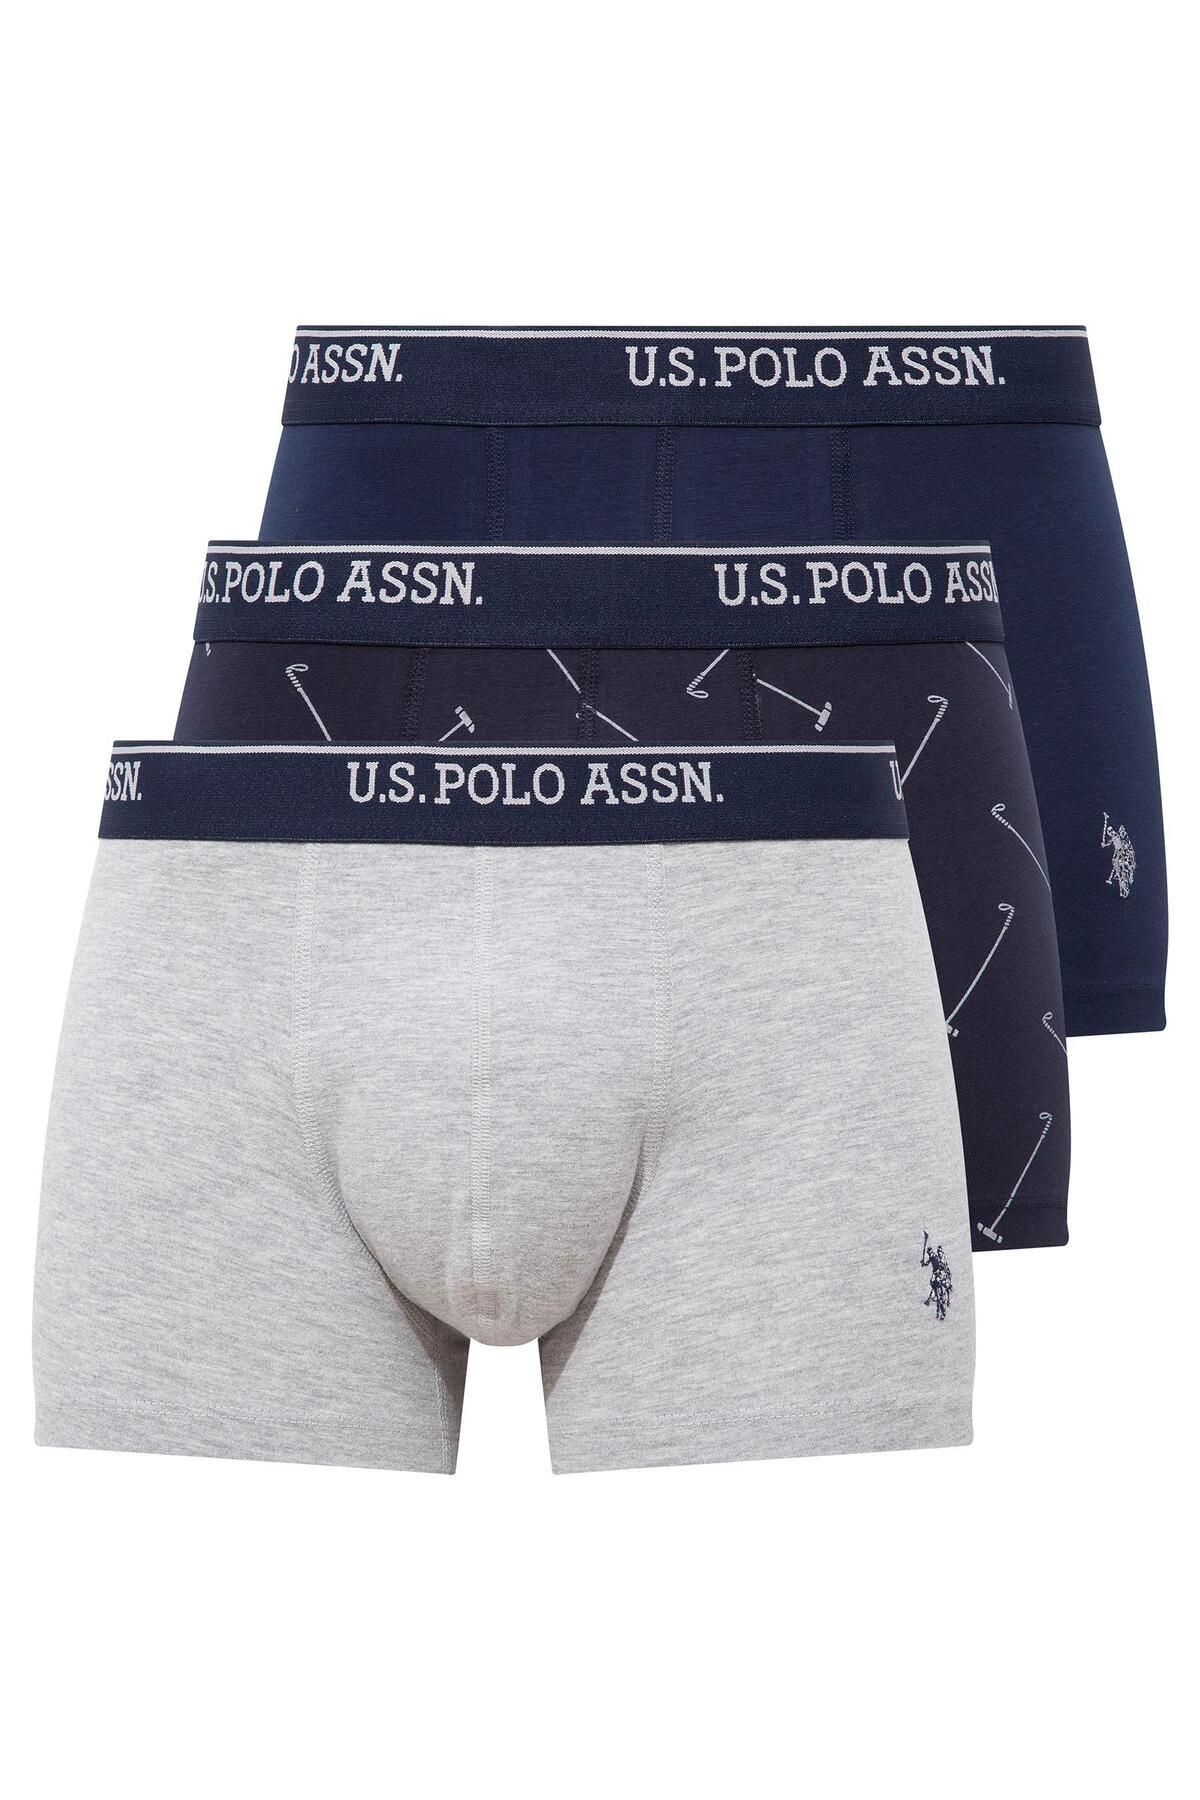 U.S. Polo Assn. U.S. Polo Assn. -  Erkek Gri Melanj - Lacivert - Lacivert Baskılı 3 lü Boxer